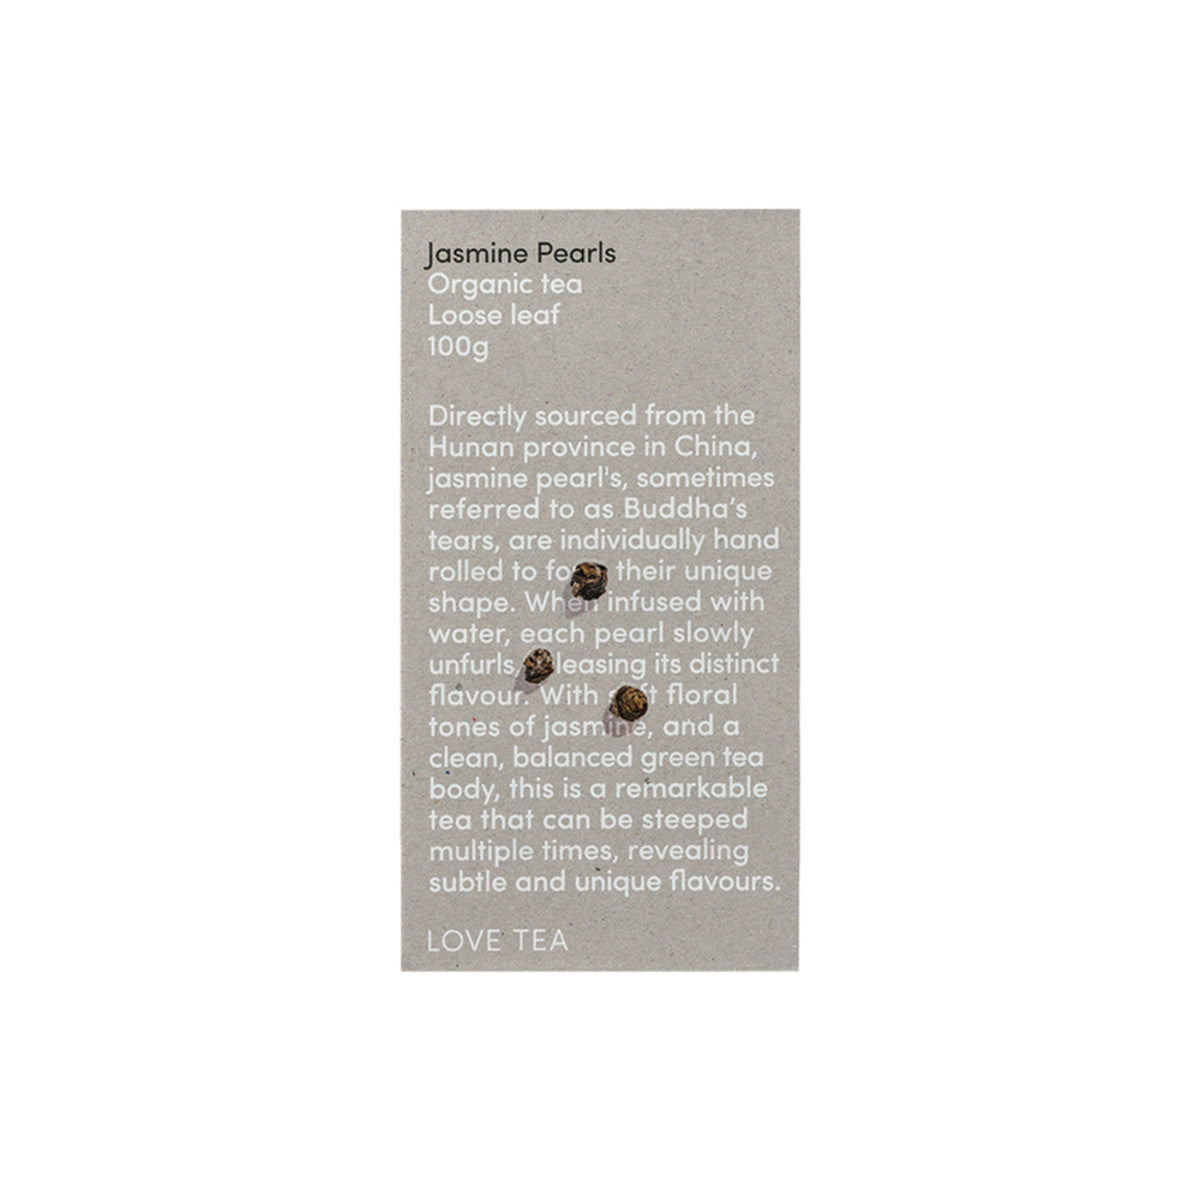 Love Tea - Organic Jasmine Pearls Loose Leaf